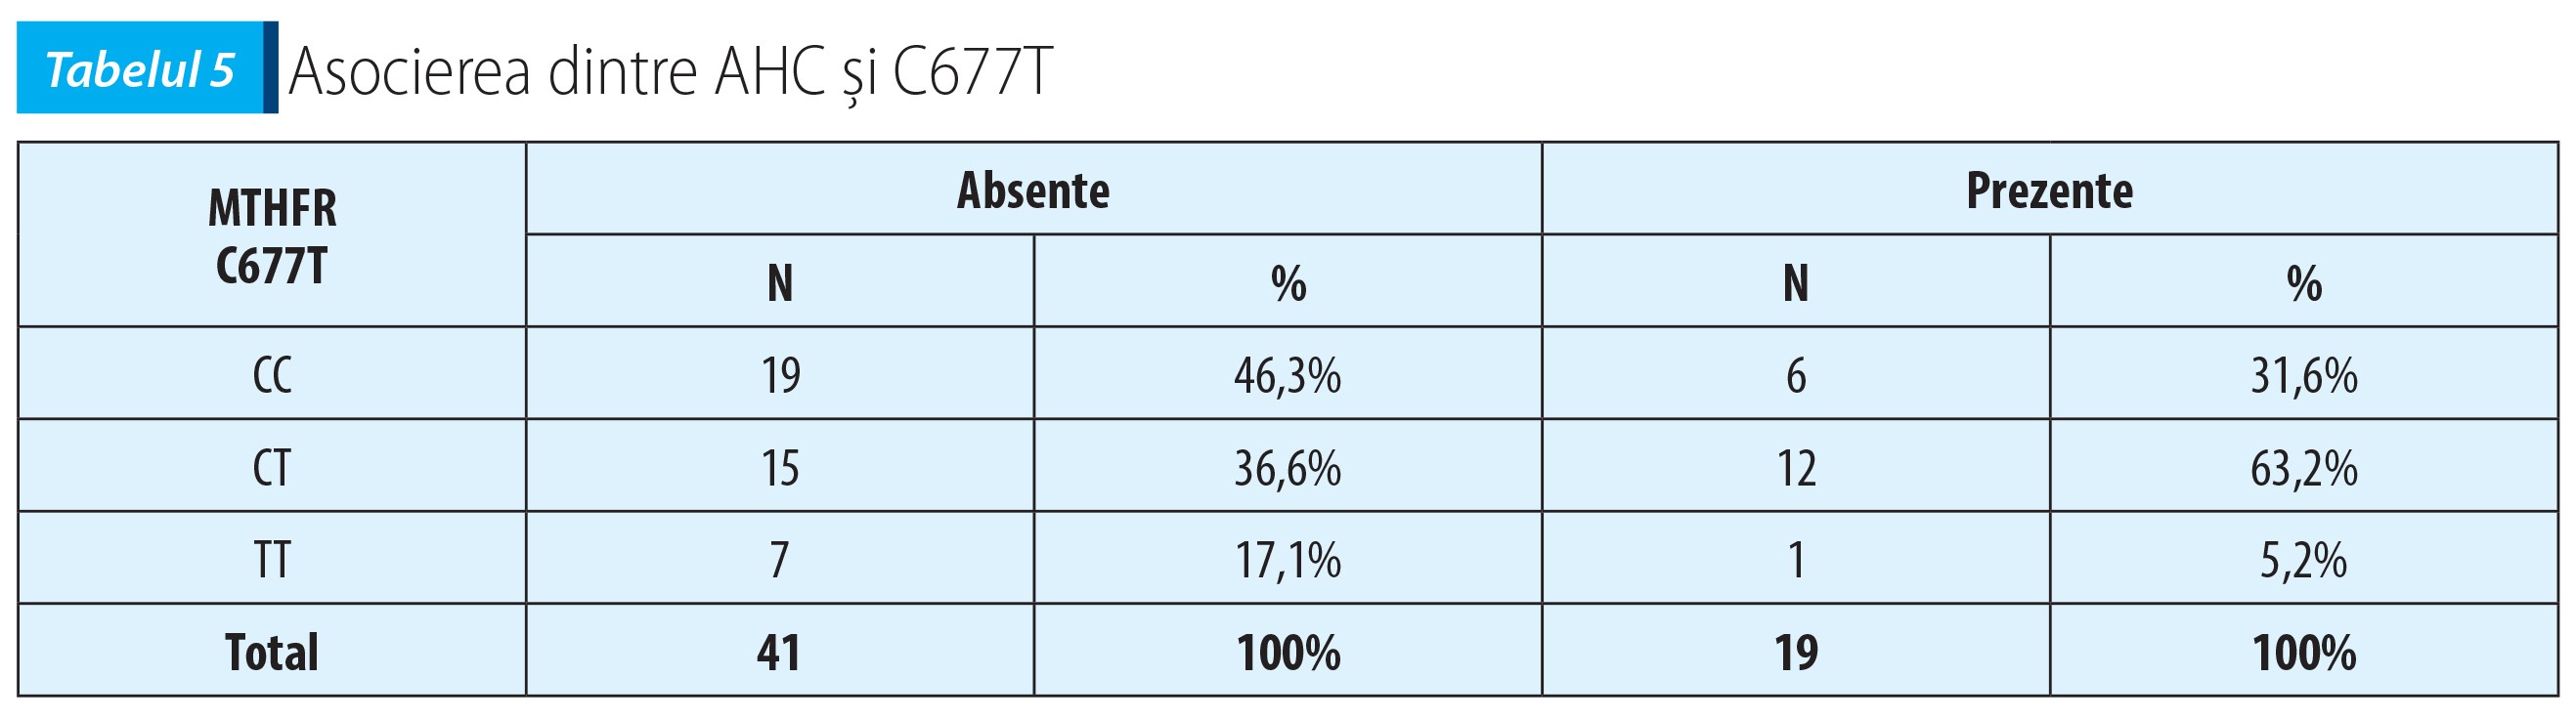 Tabelul 5; Asocierea dintre AHC și C677T